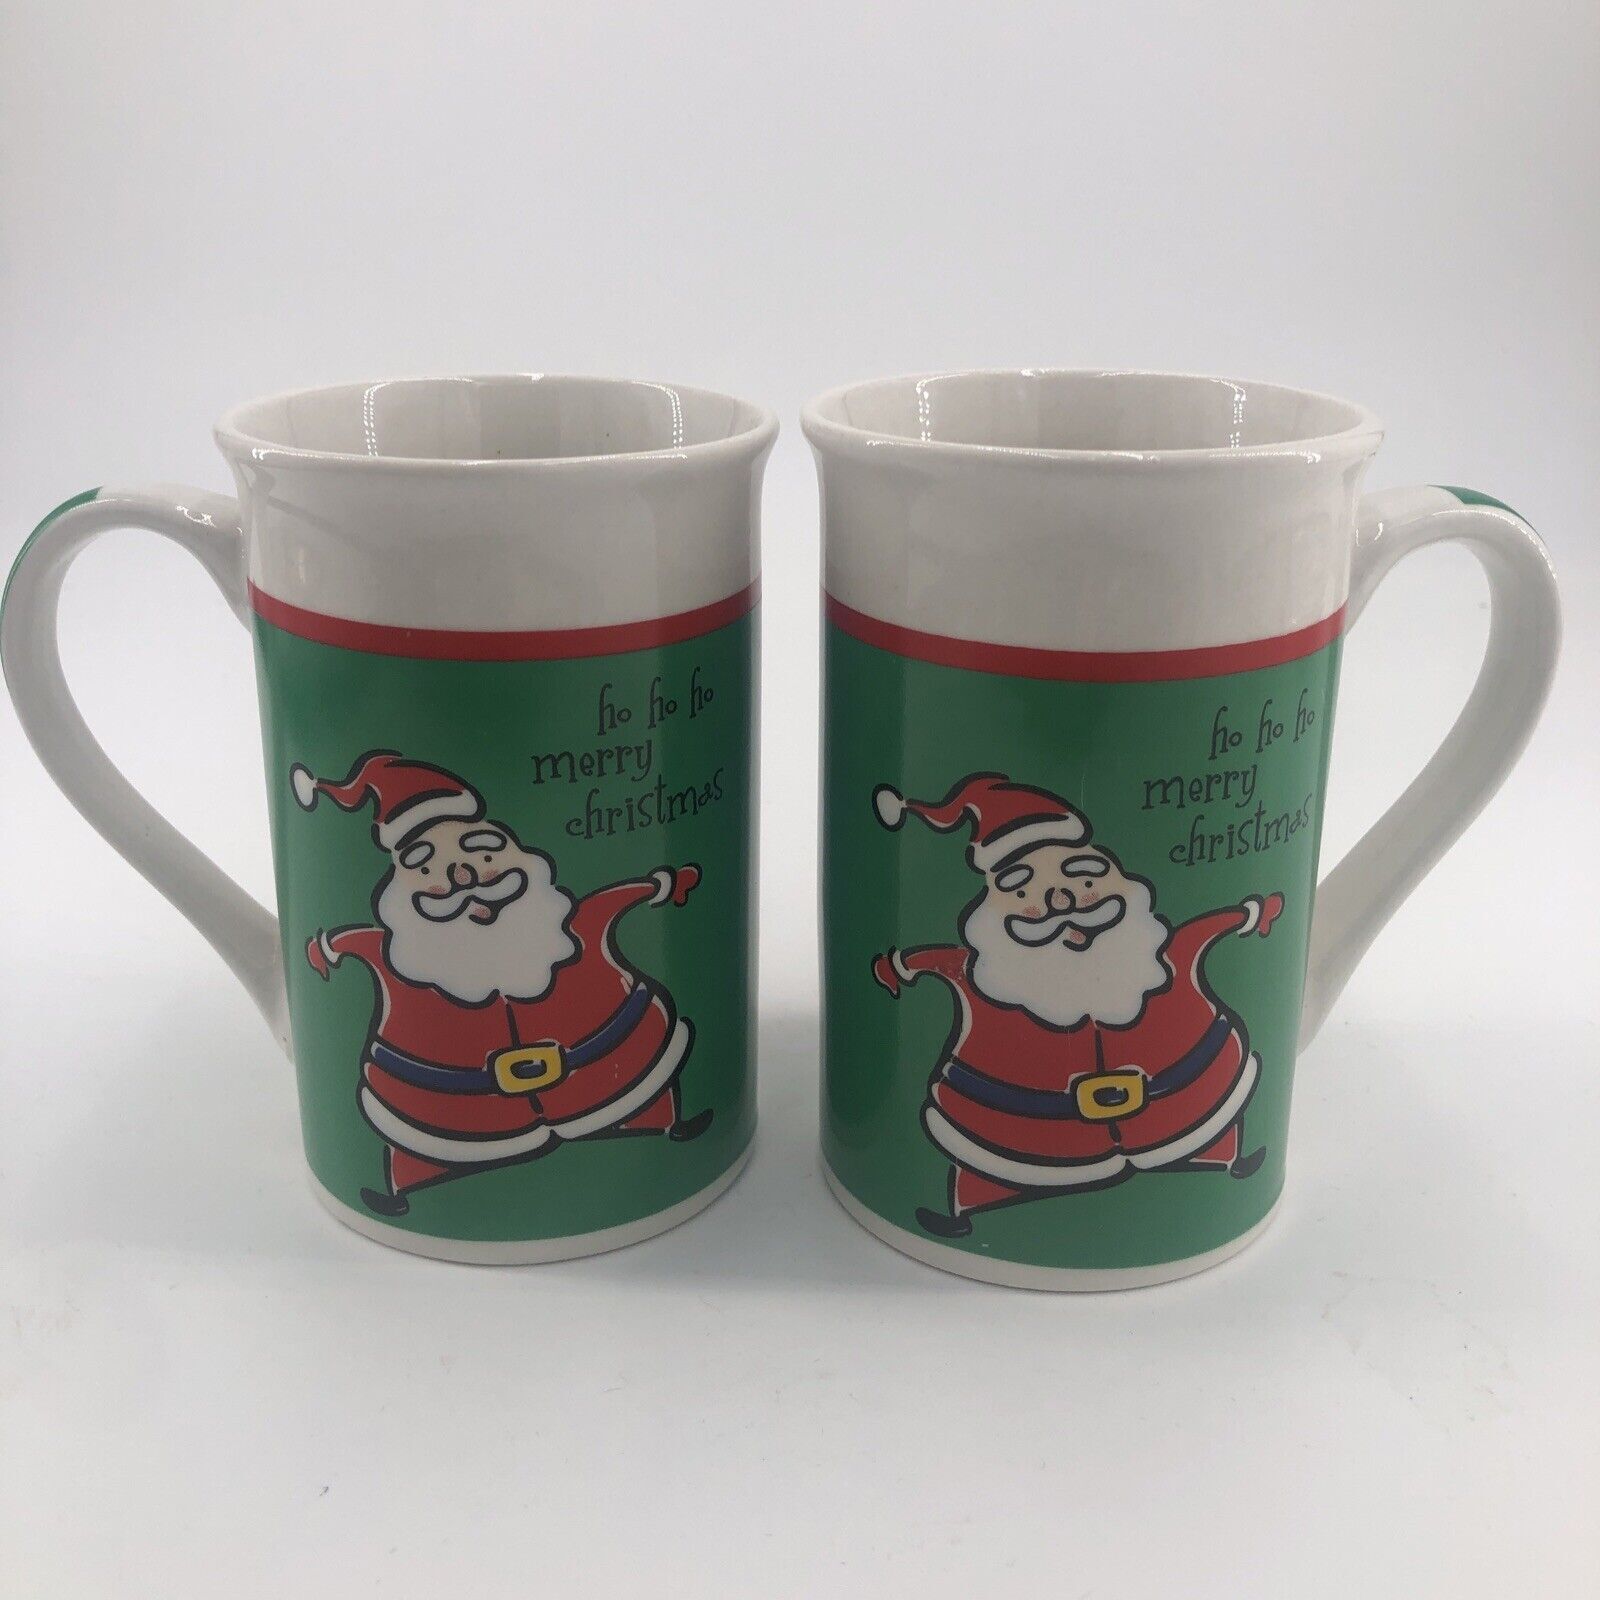 Holiday Mugs Two Total Royal Norfolk 12 oz Ho Ho Ho Merry Christmas Cocoa Coffee